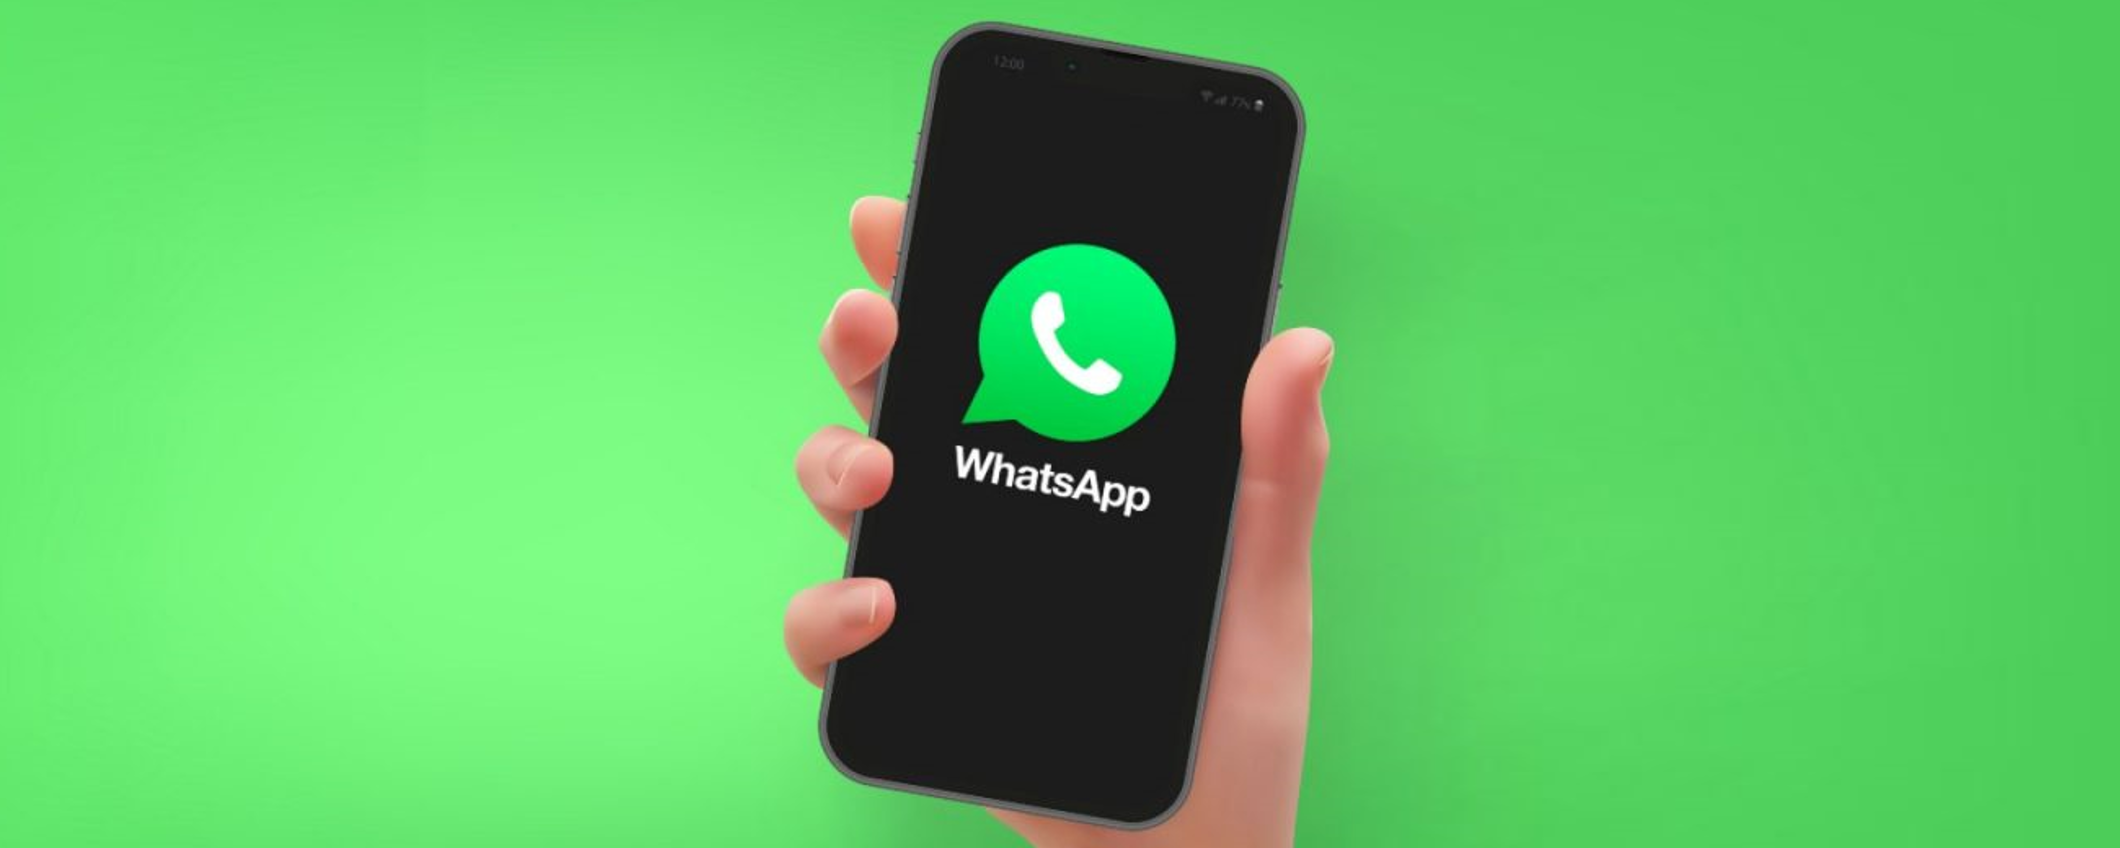 WhatsApp occuperà meno spazio sullo smartphone: ecco la novità